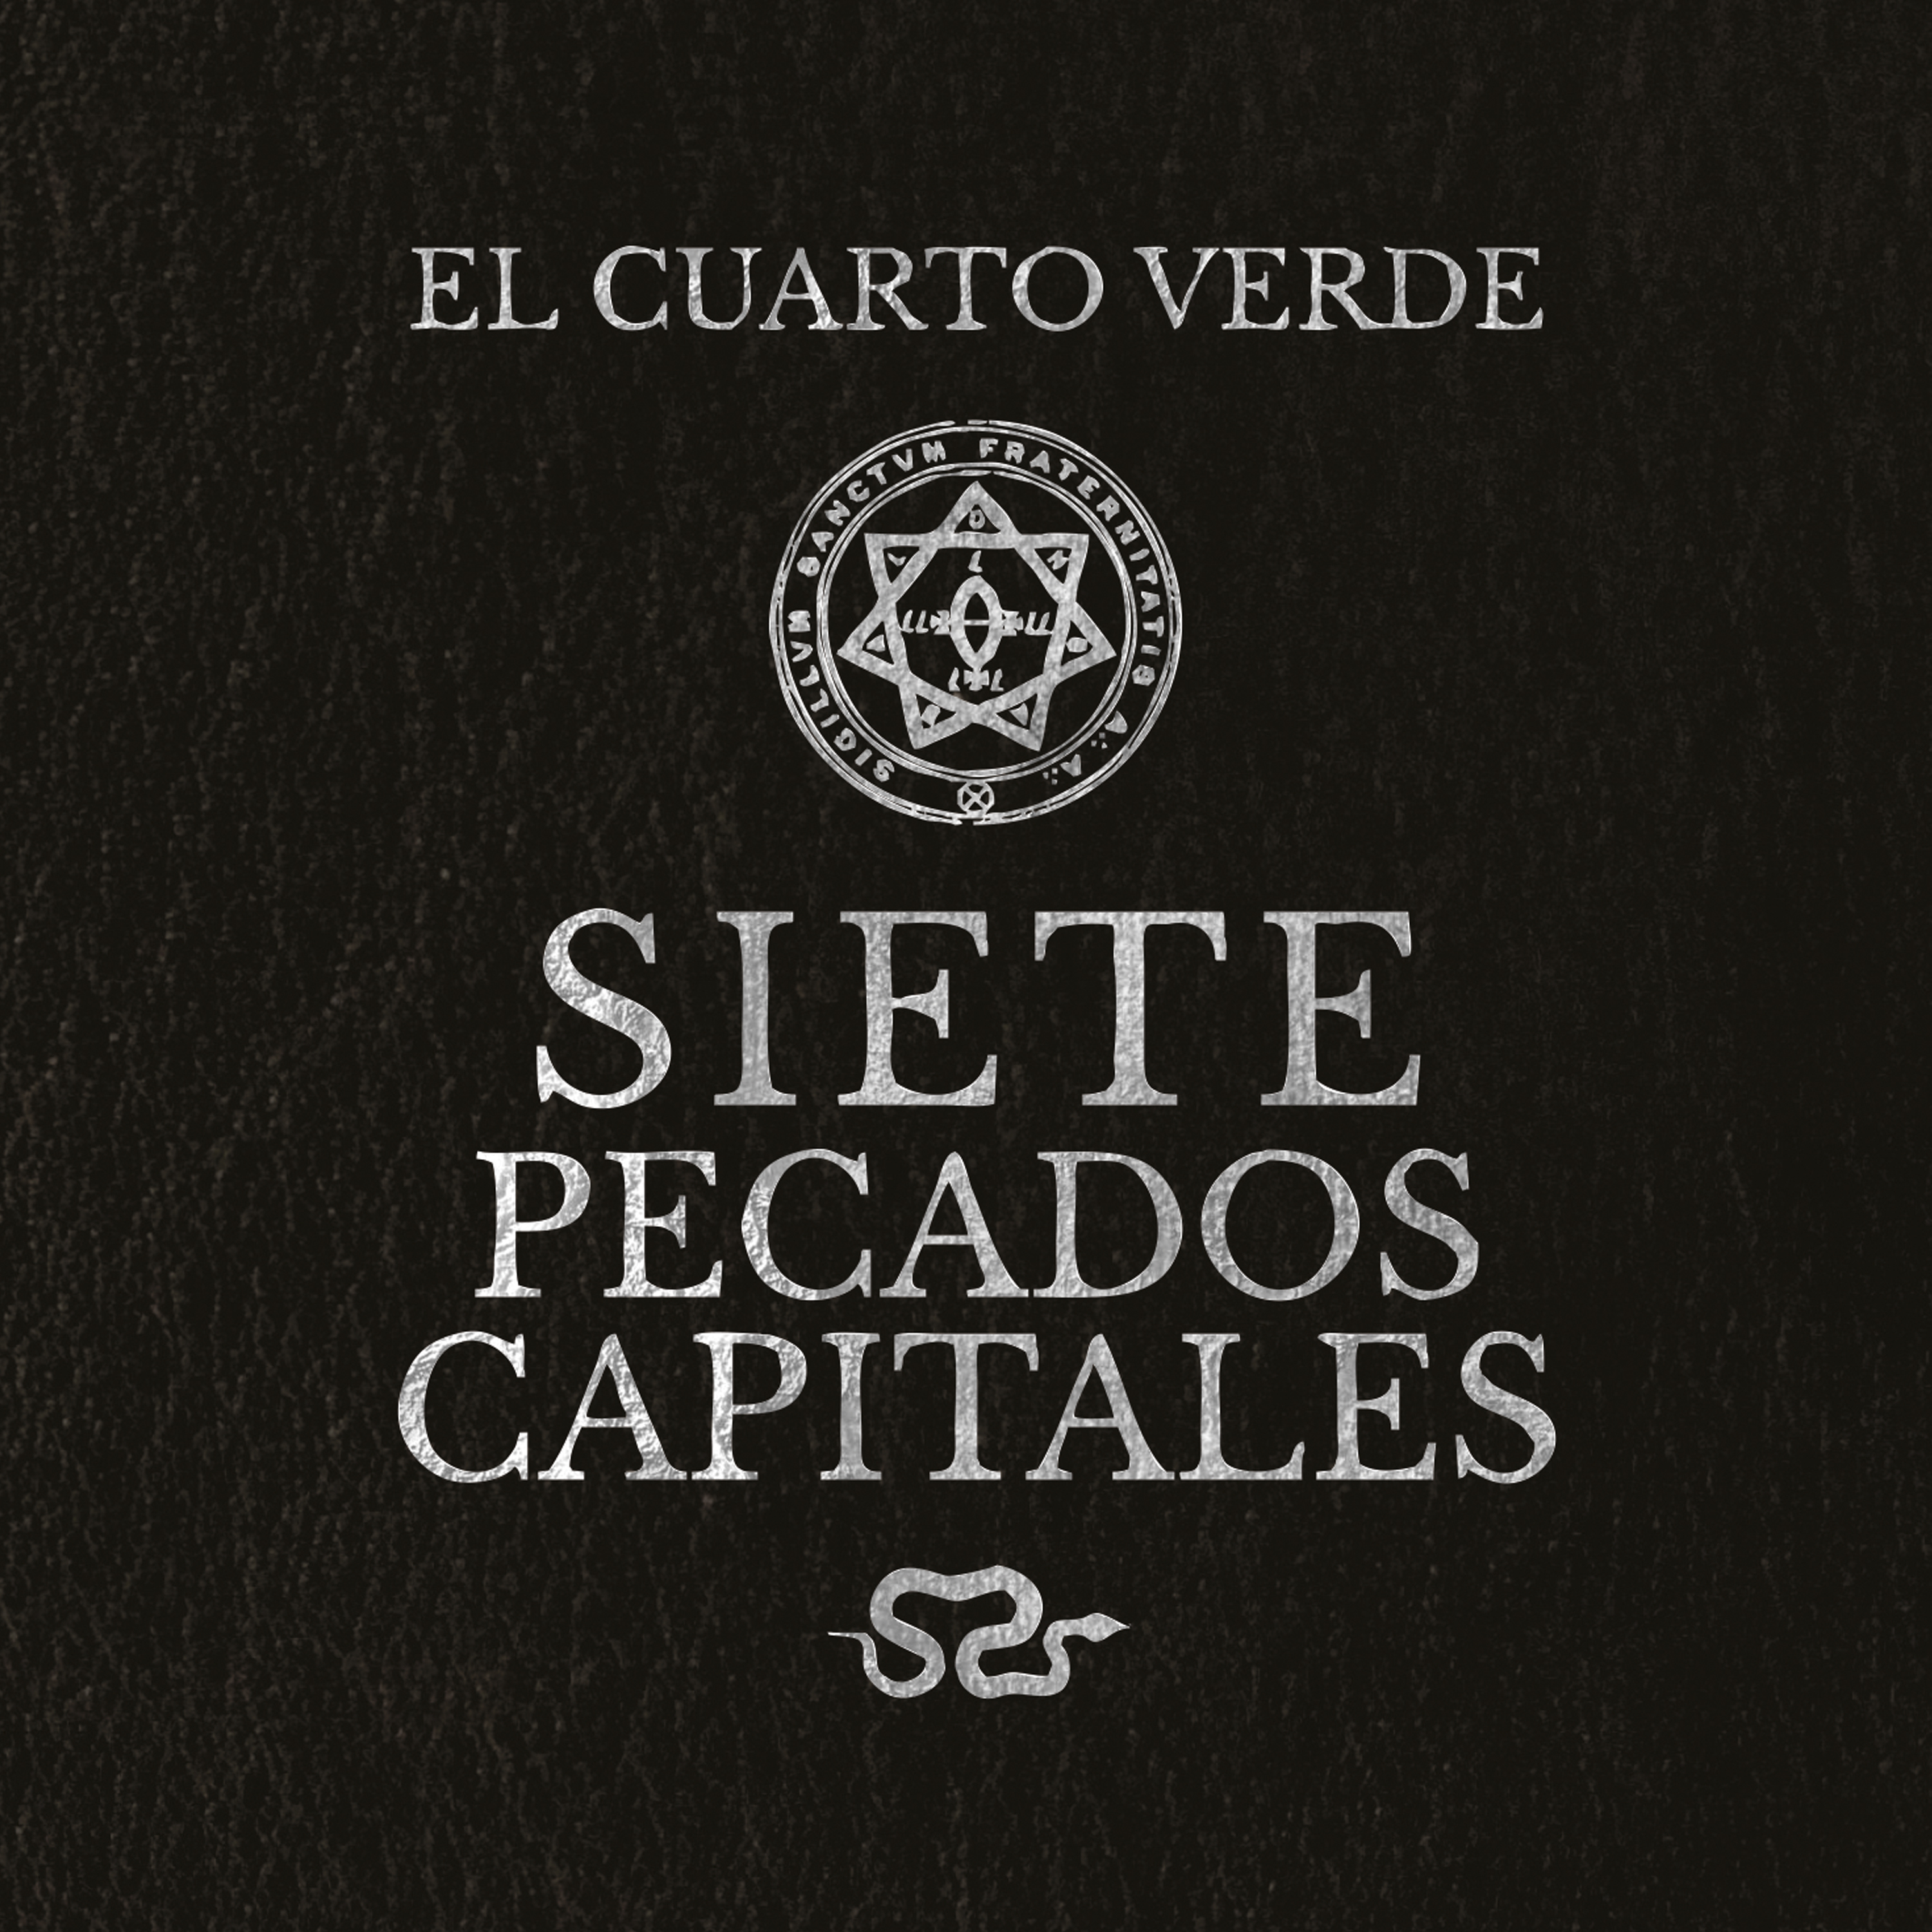 Reseña de “Siete Pecados Capitales” nuevo disco de EL CUARTO VERDE